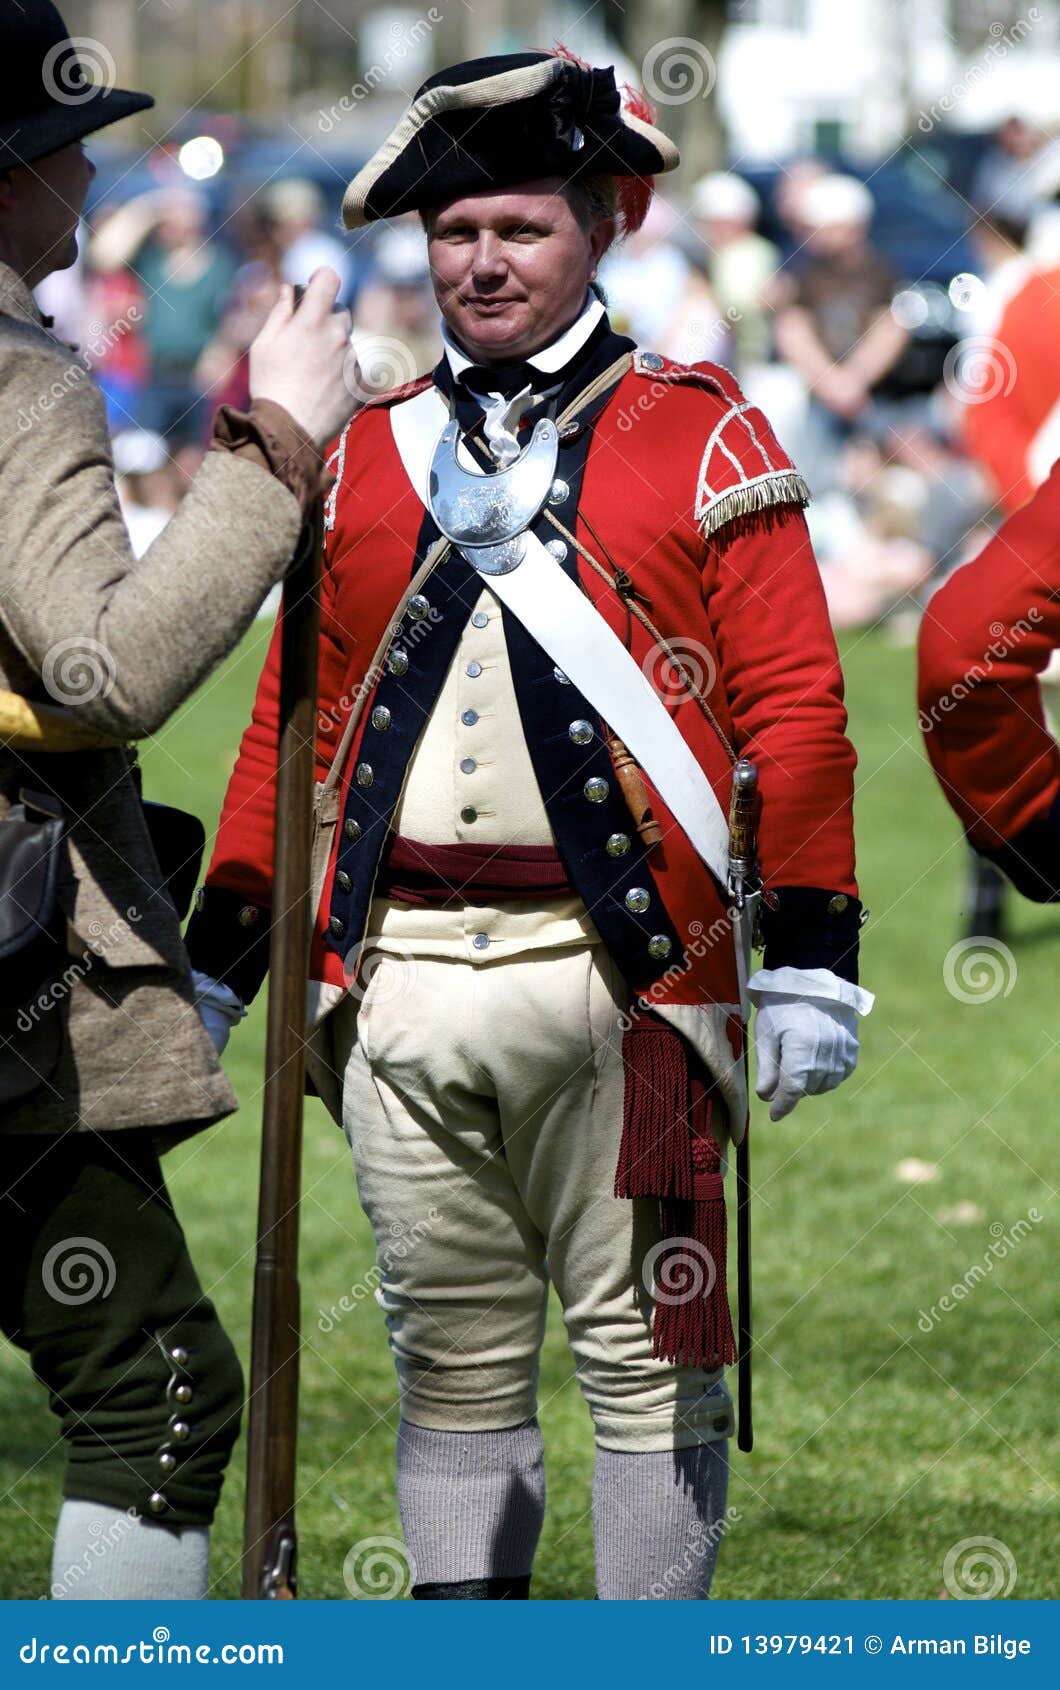 man-dressed-as-british-redcoat-13979421.jpg